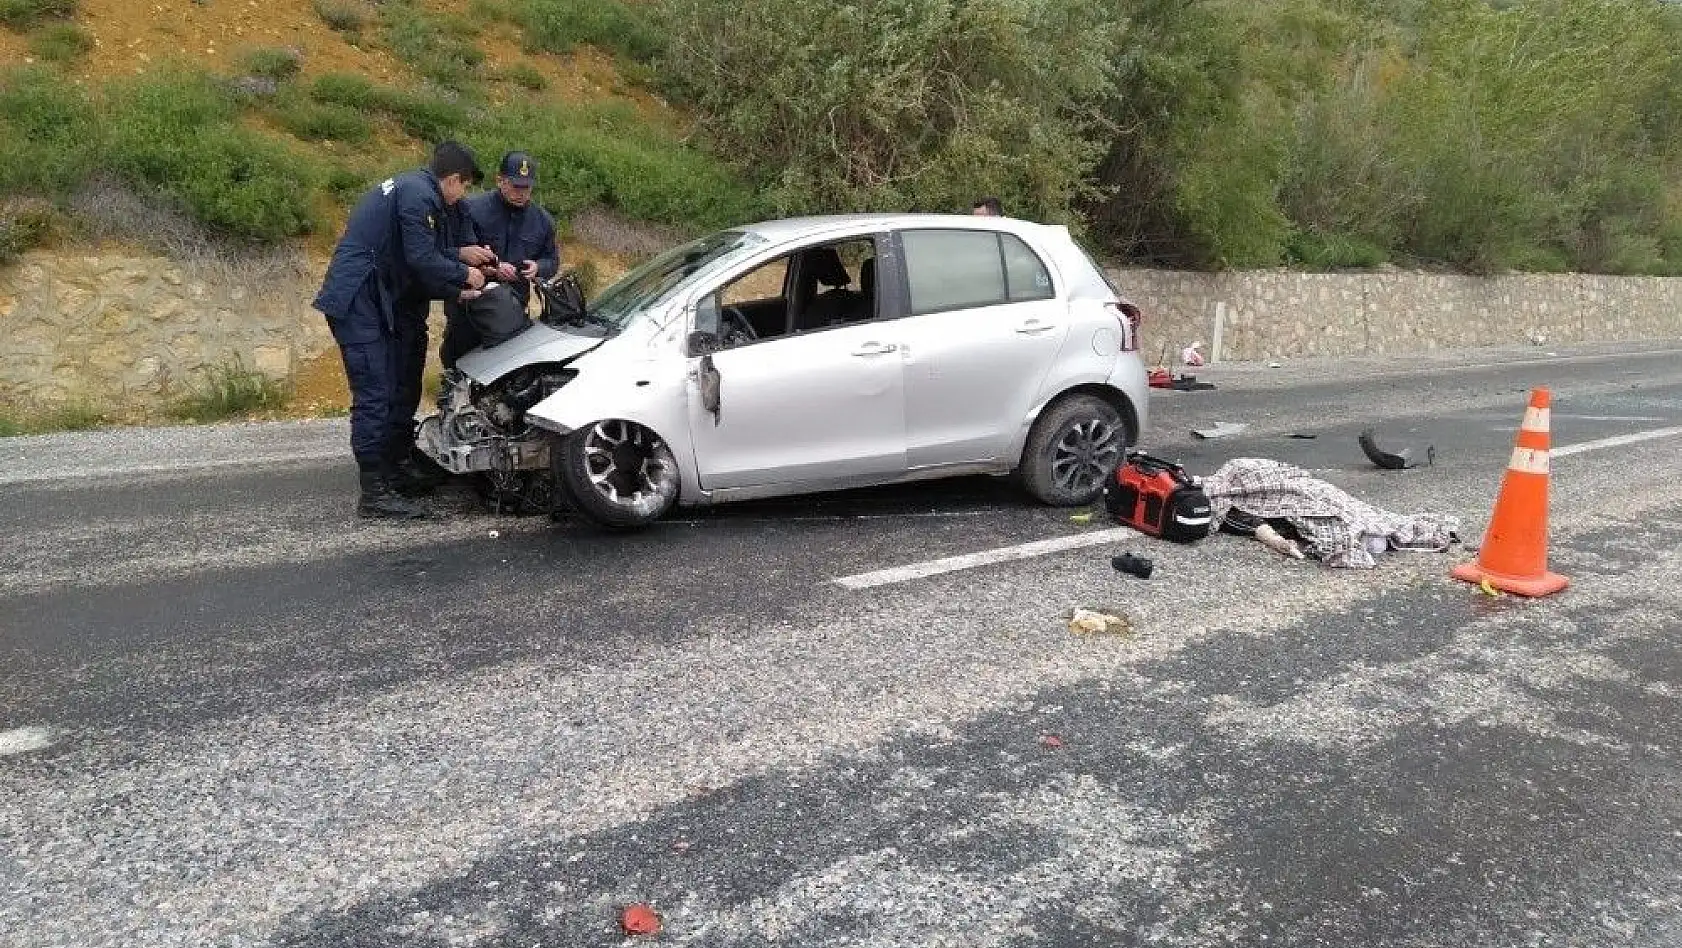 Kayseri-Kahramanmaraş yolunda trafik kazası: 1 ölü